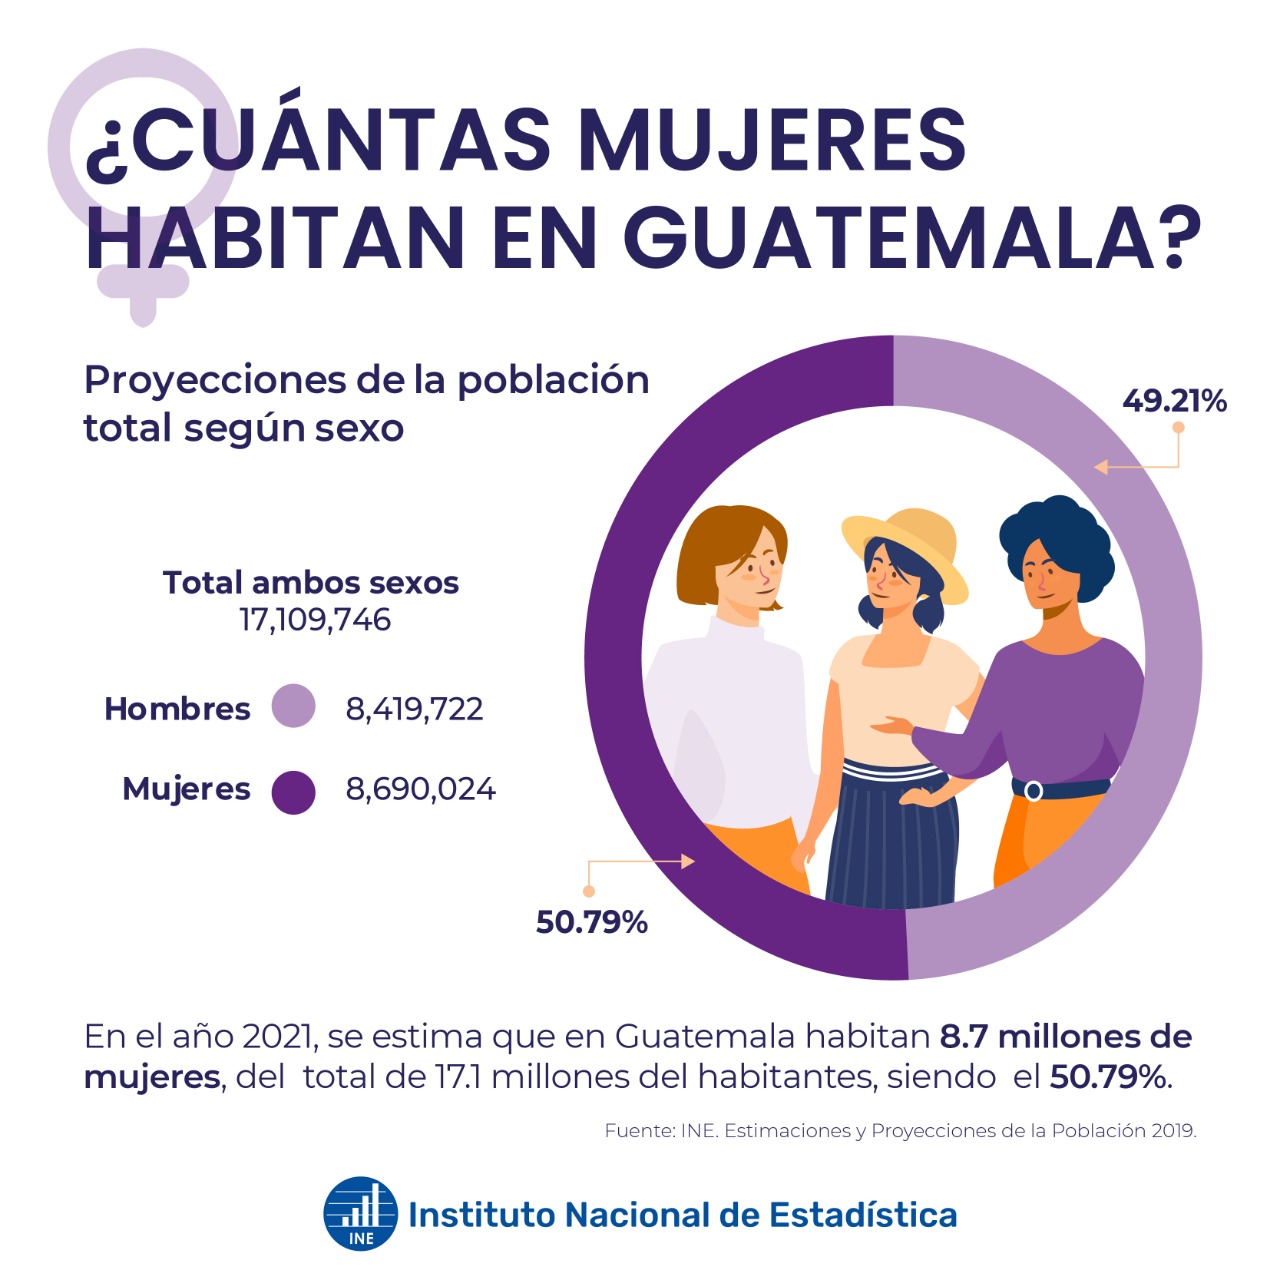 Cuántas mujeres hay en Guatemala